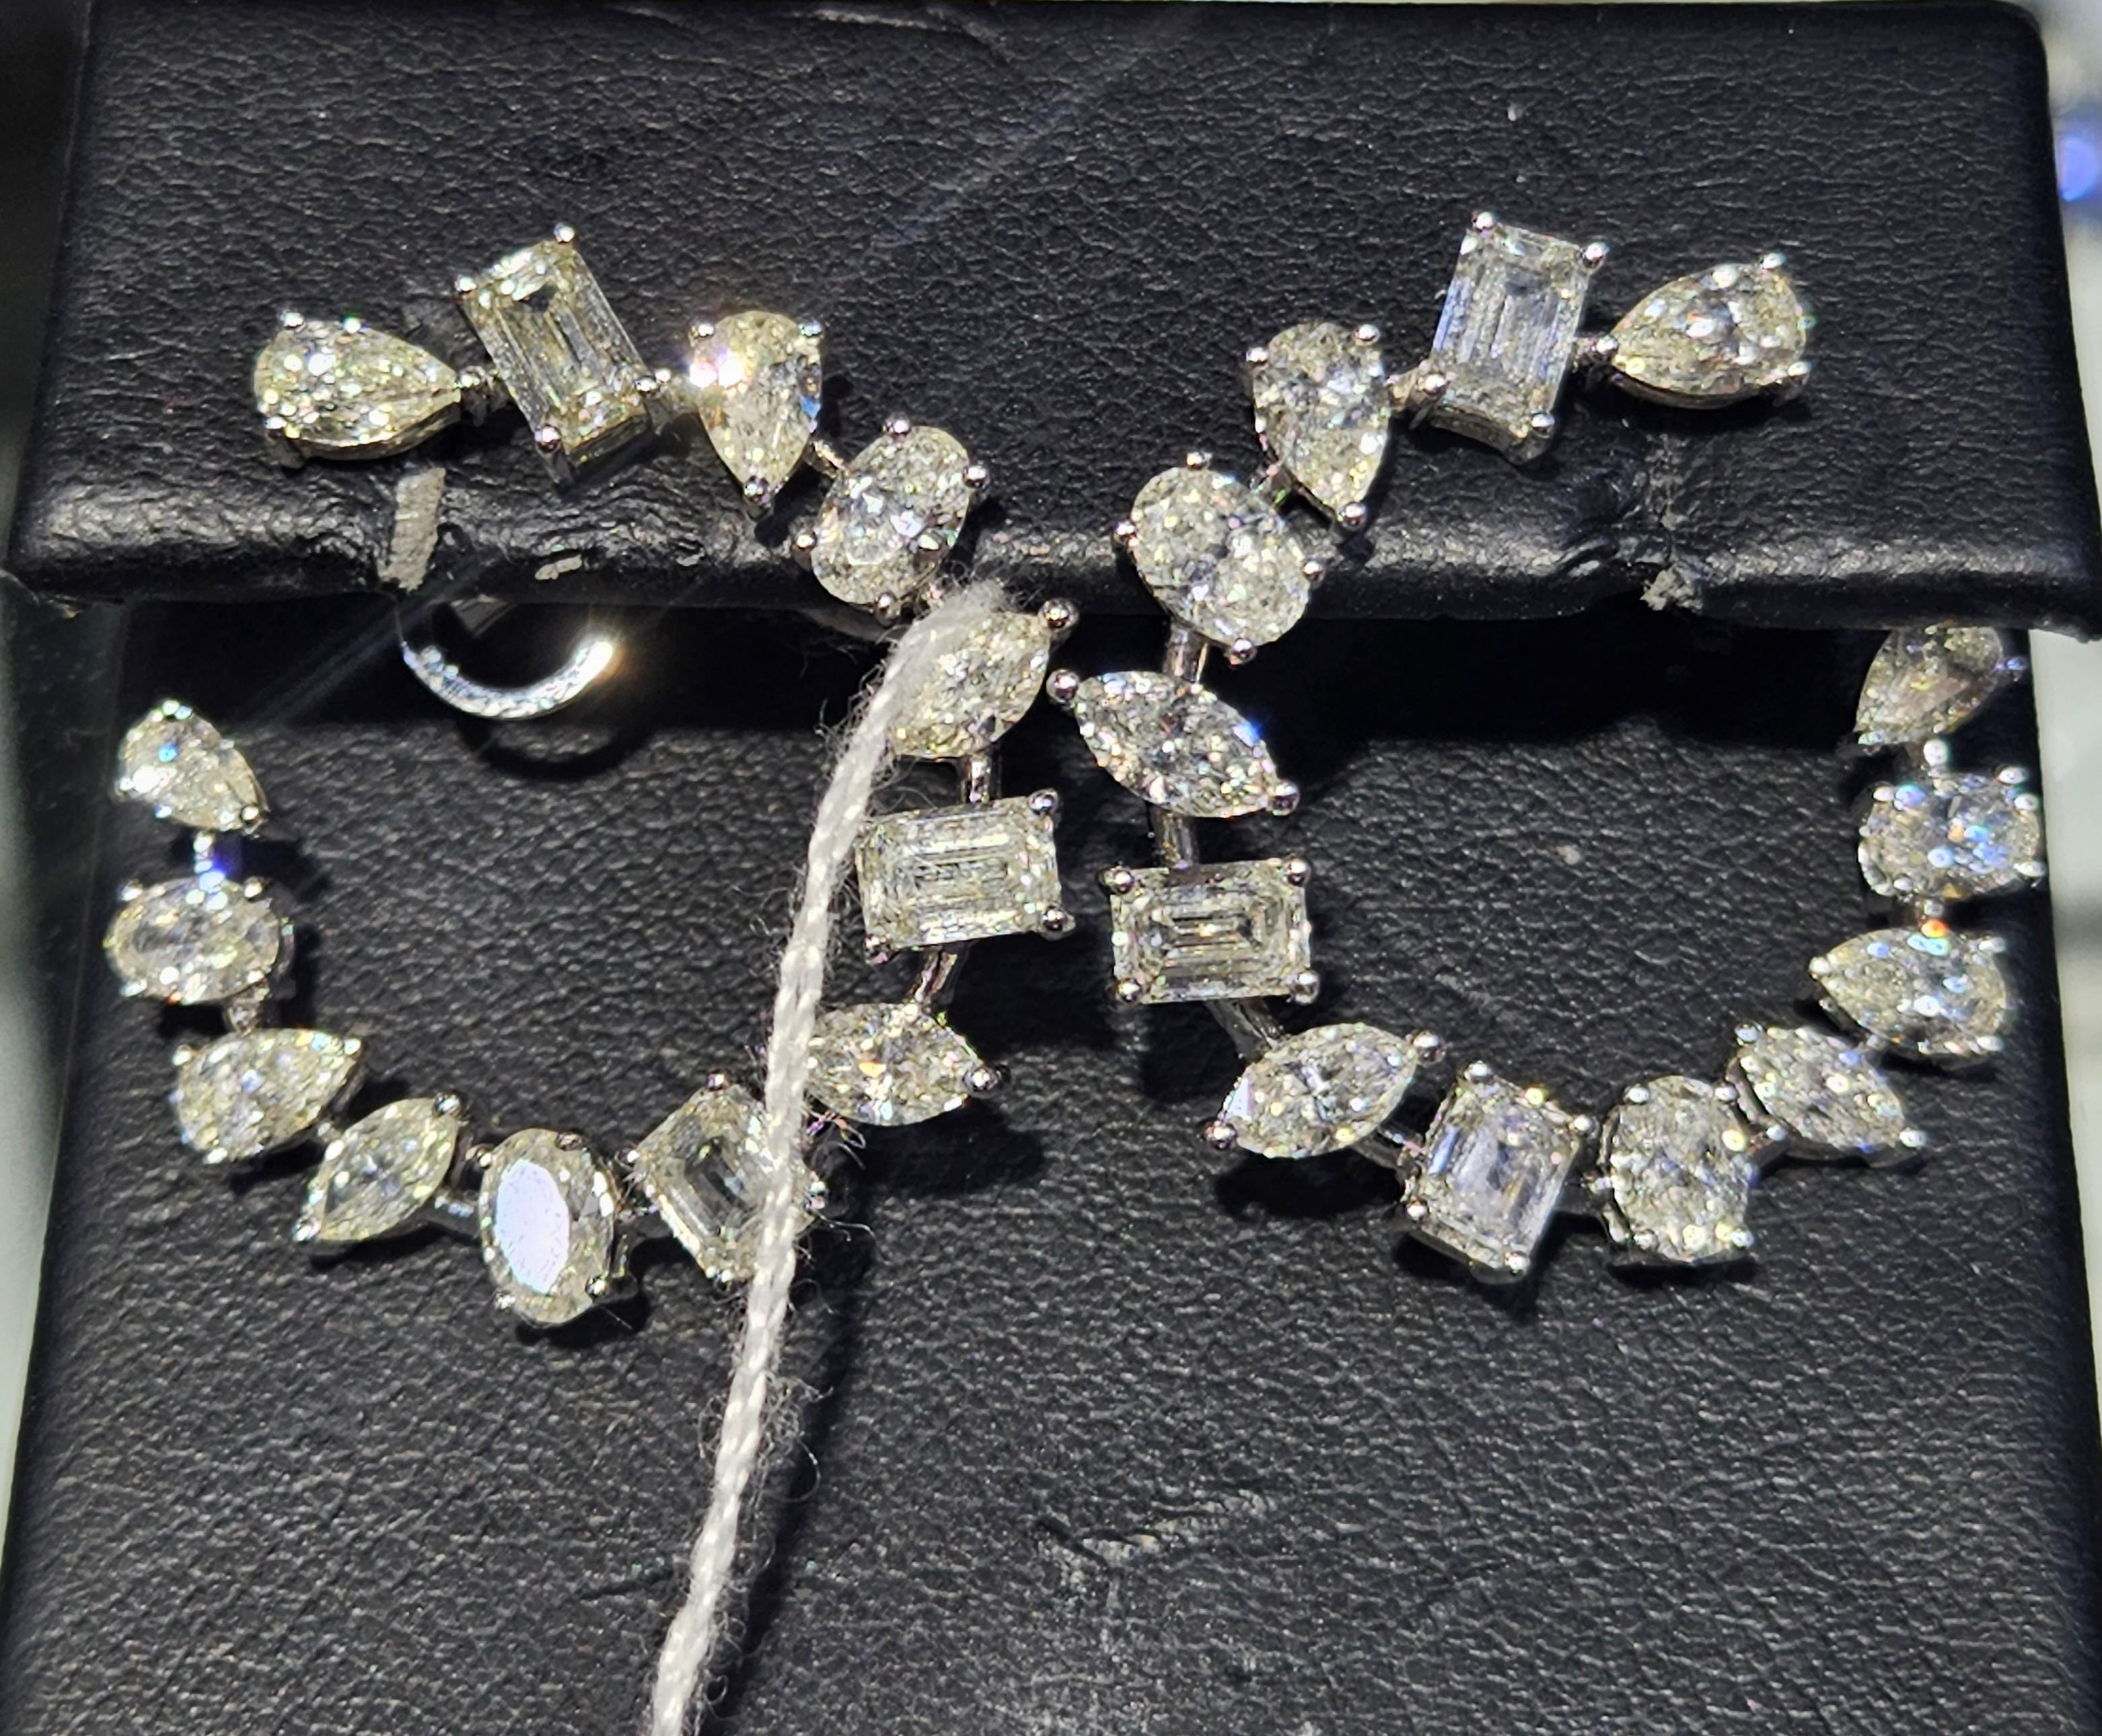 L'article suivant est un Rare Important Radiant 18KT Gold Large Rare Fancy Gorgeous Glittering Fancy Diamond Hoop Earrings. Les boucles d'oreilles sont composées d'un magnifique ensemble de diamants de formes assorties et scintillantes qui se